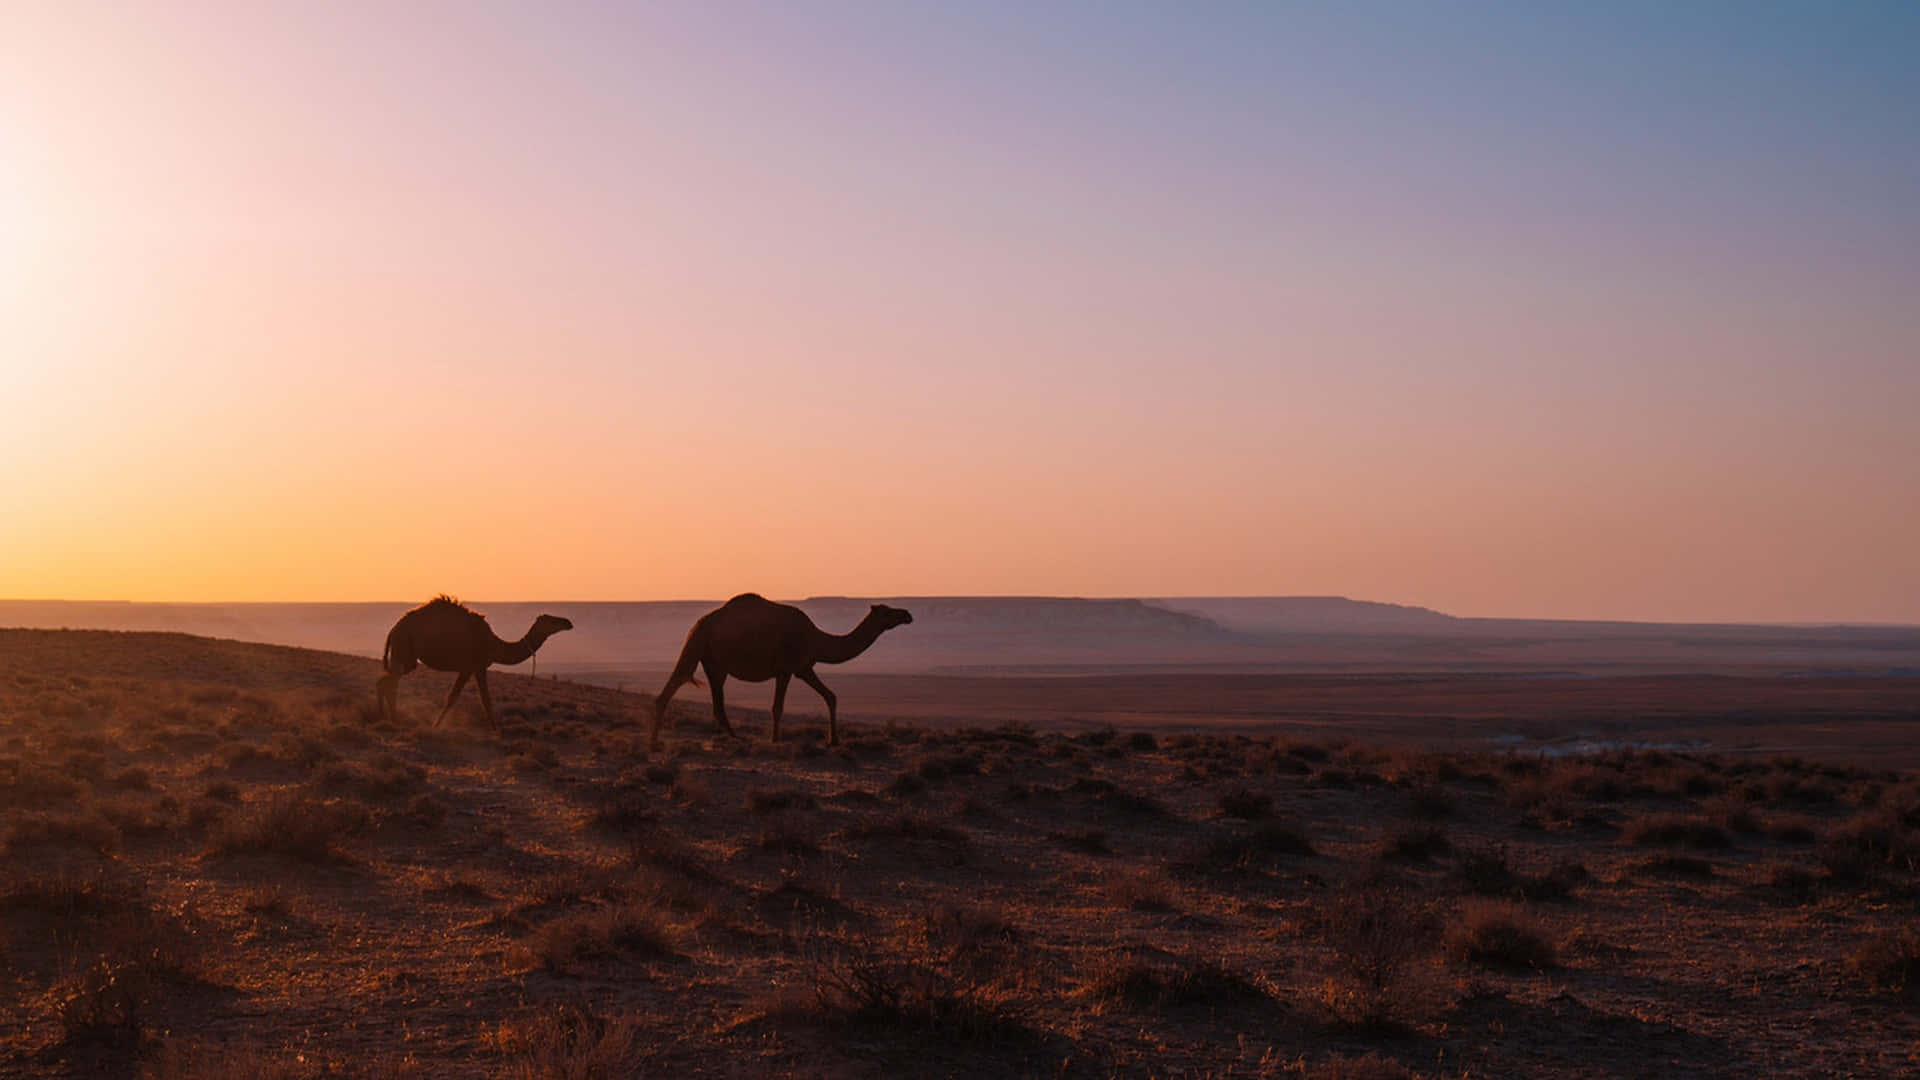 Umrebanho De Camelos Atravessando Um Deserto Árido.